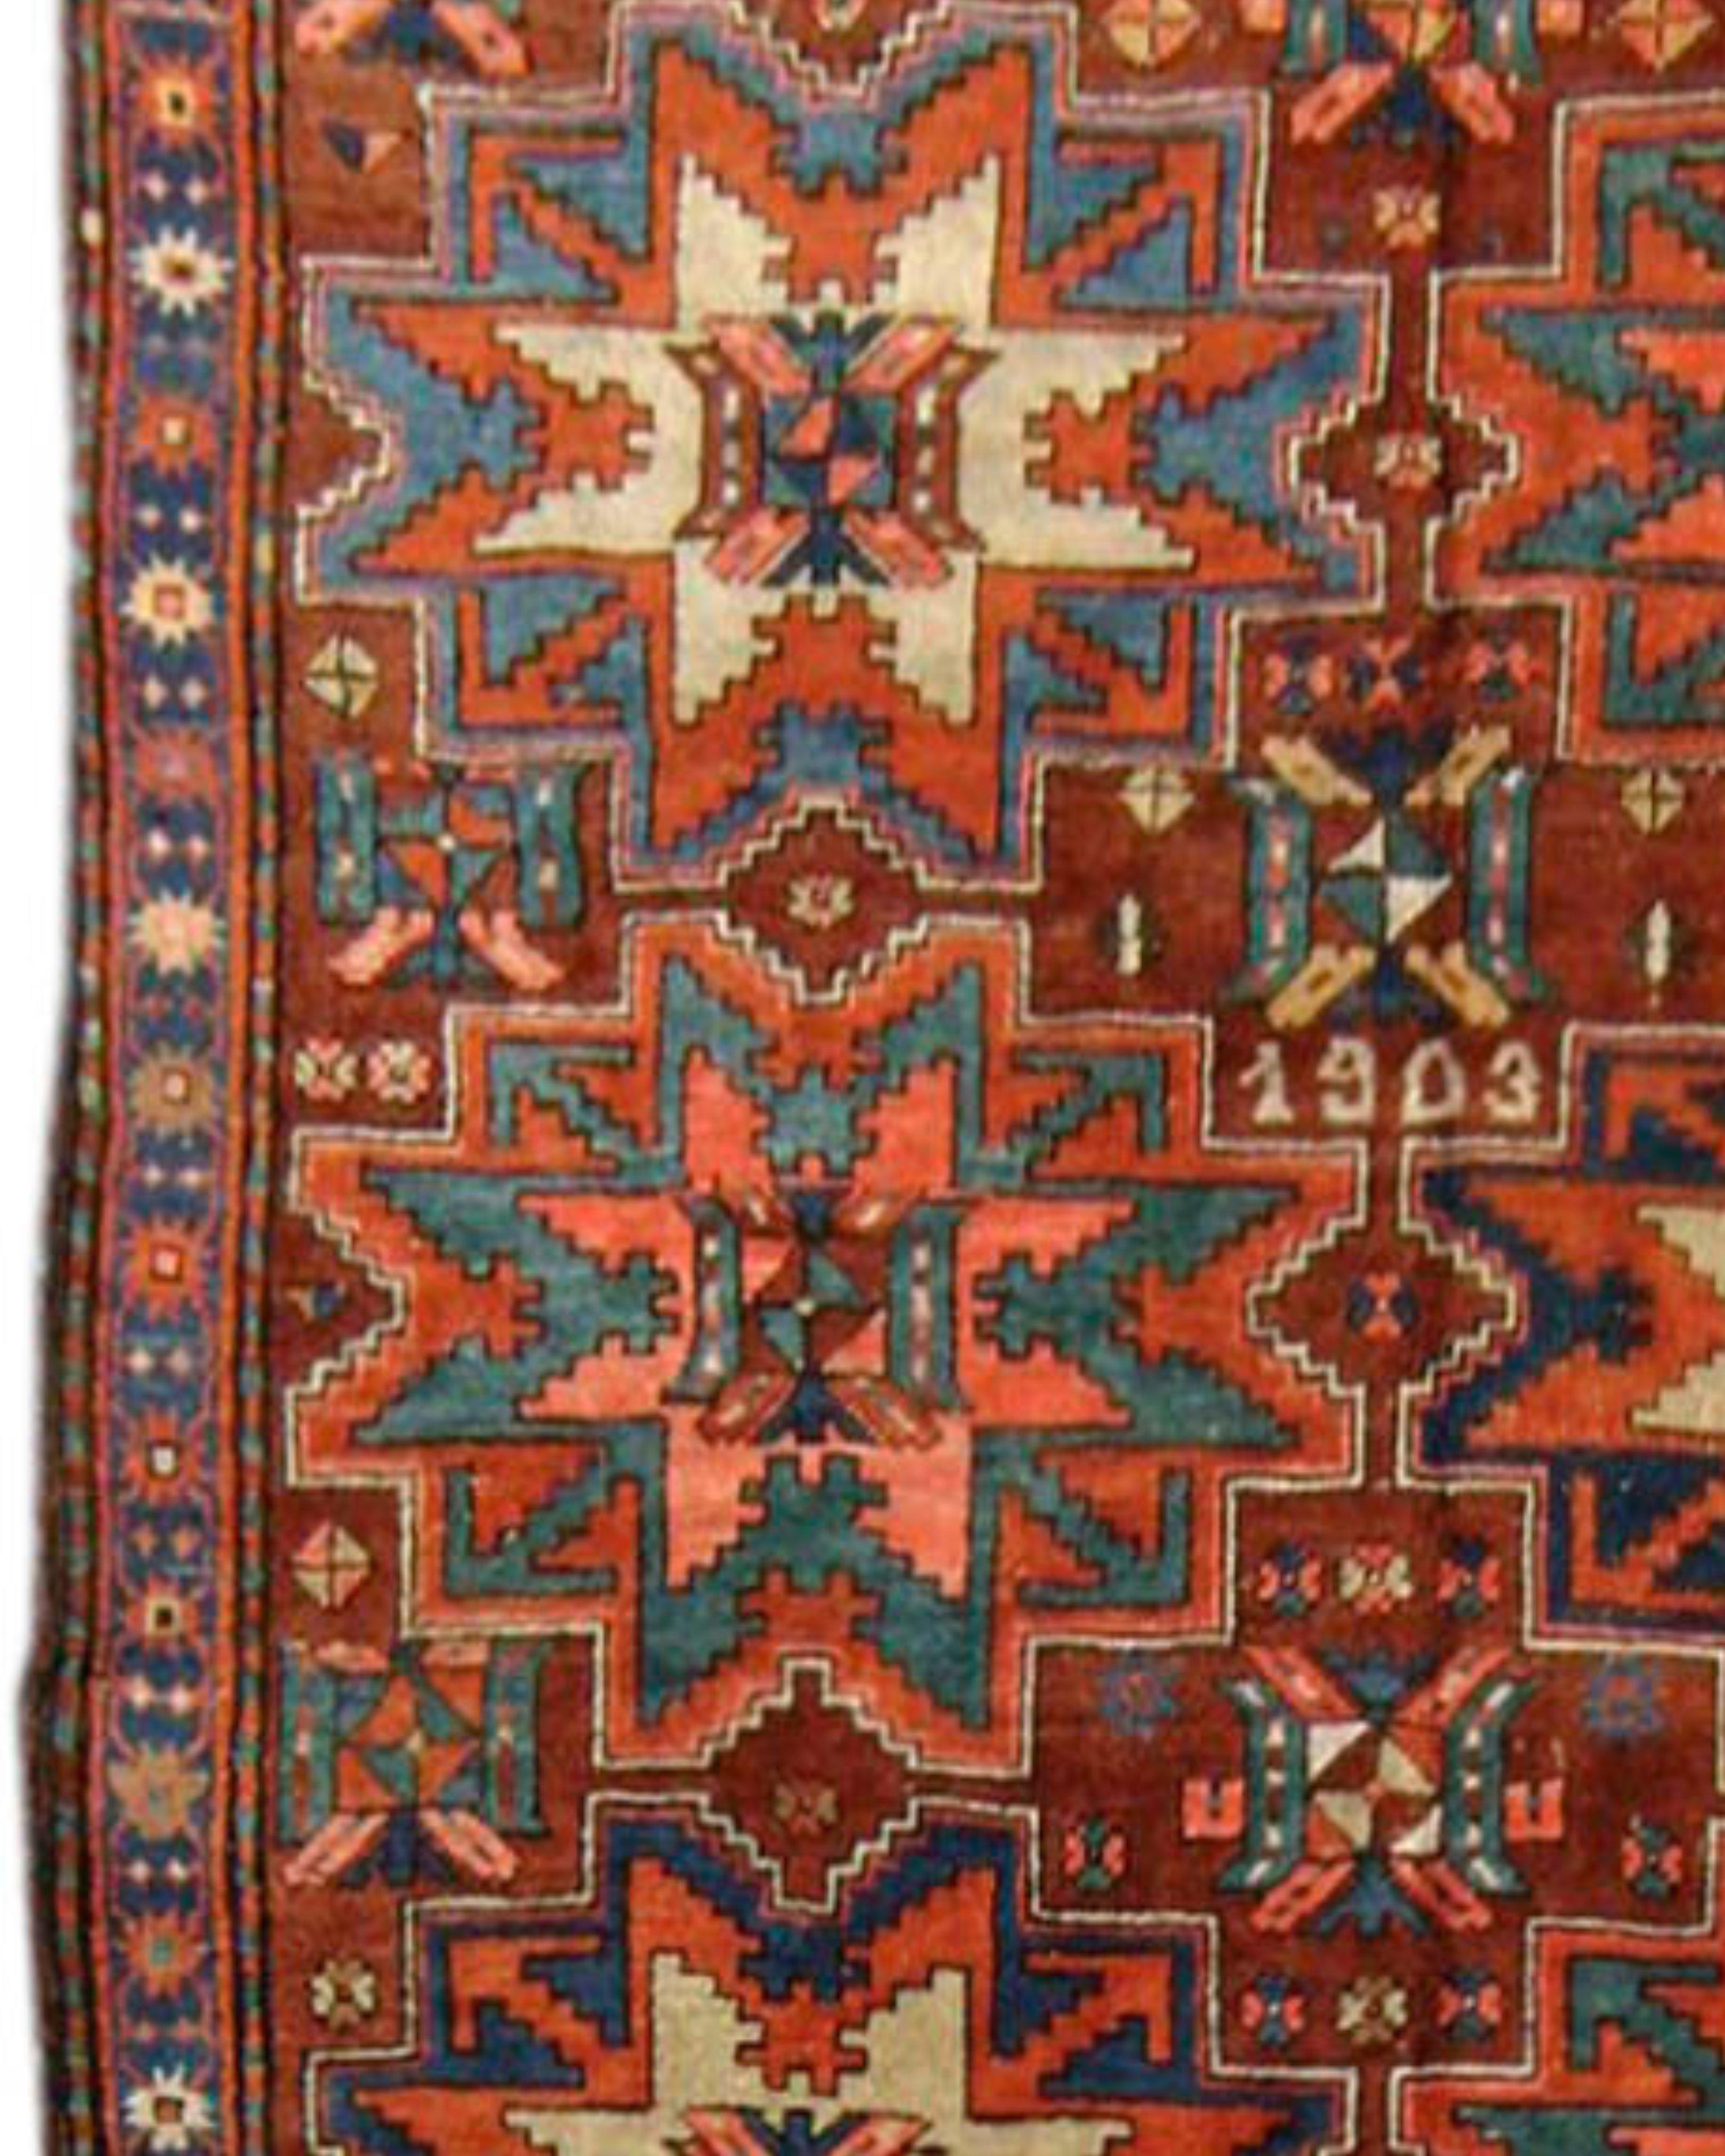 Antiker persischer Karabagh-Teppich, frühes 20. Jahrhundert

Zusätzliche Informationen:
Abmessungen: 5'1